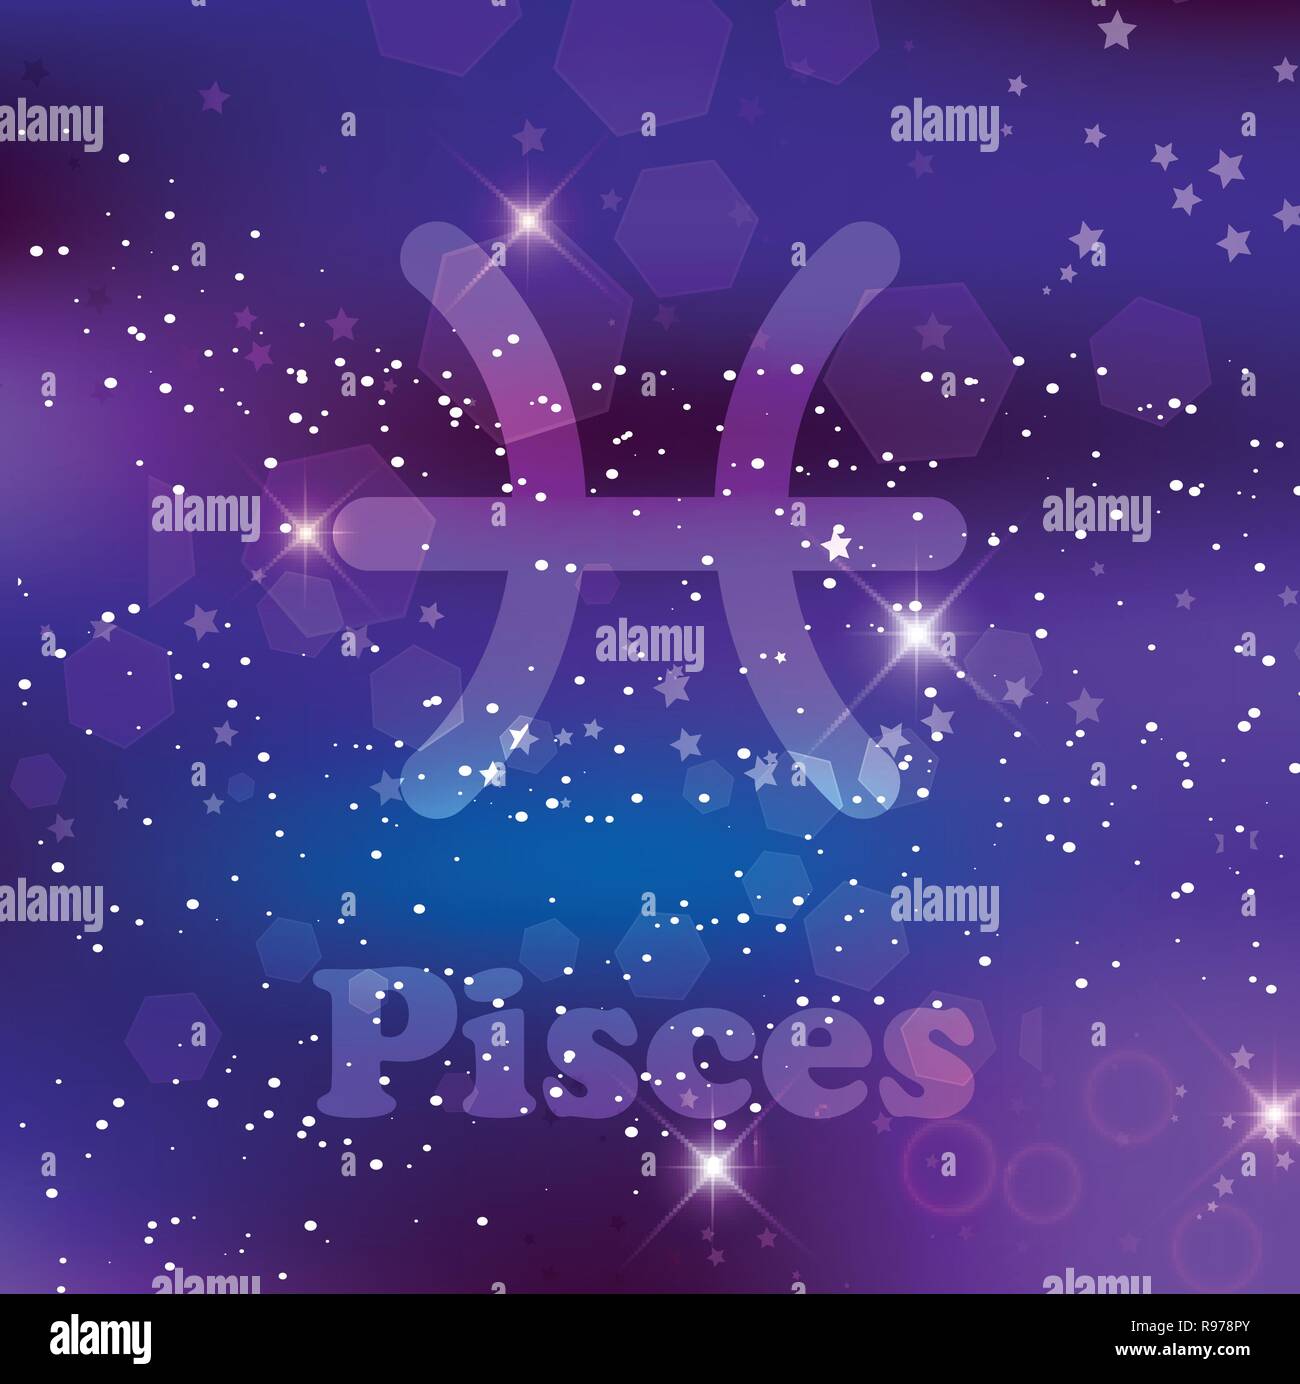 Pesci segno zodiacale e costellazione sul cosmica sfondo viola con stelle luccicanti e nebulosa. Illustrazione Vettoriale, banner, poster, pesce card. Spac Illustrazione Vettoriale